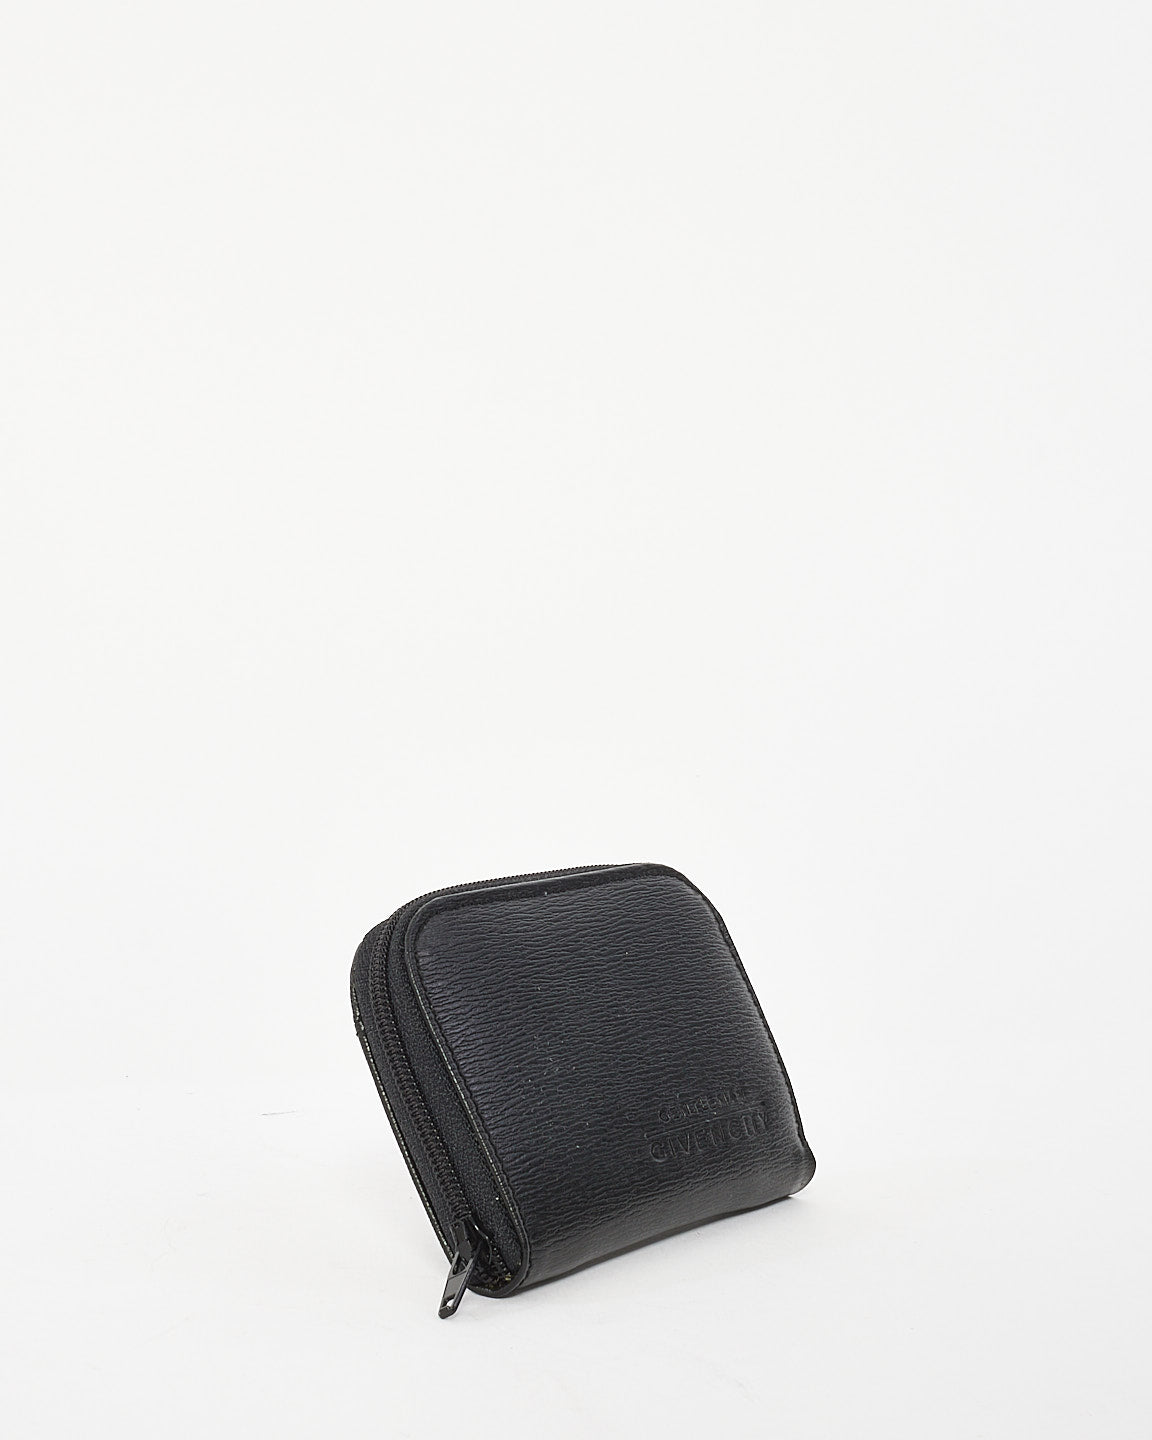 Givenchy Vintage Gentlemen Black Leather Zip Around Coin Purse Wallet